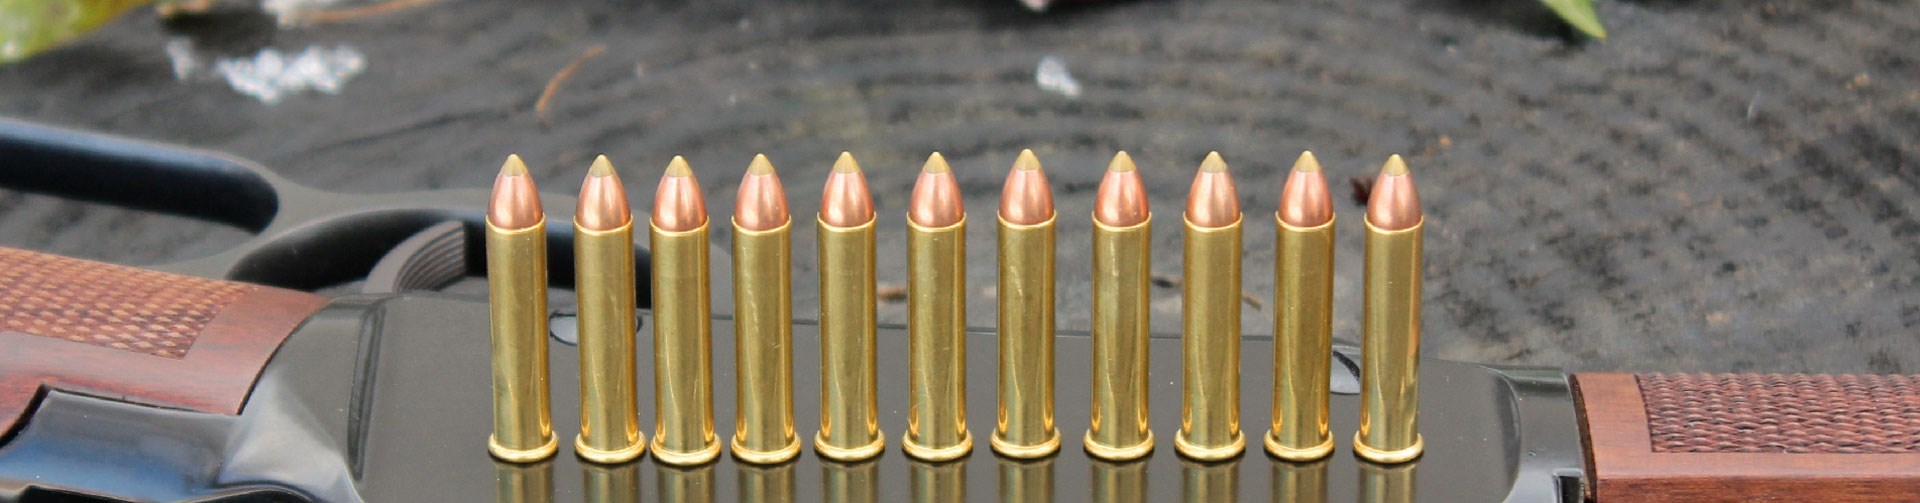 .22 Magnum shells on Henry Magnum Express receiver